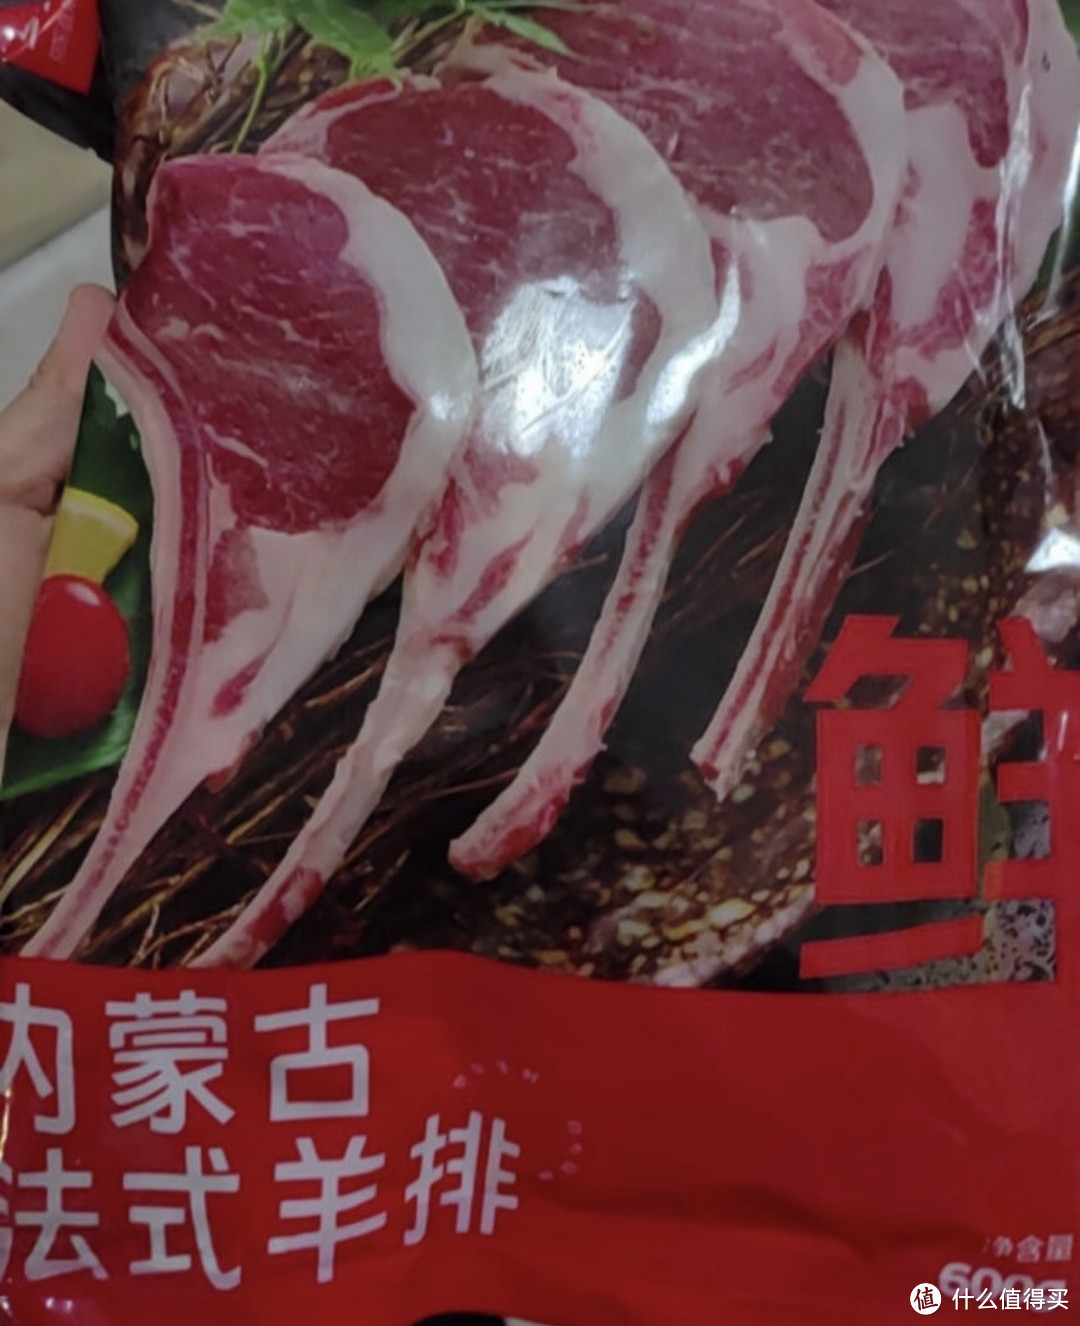 鲜京采新西兰进口原切羊排肉卷350g/袋羊肉片生鲜涮肉火锅食材